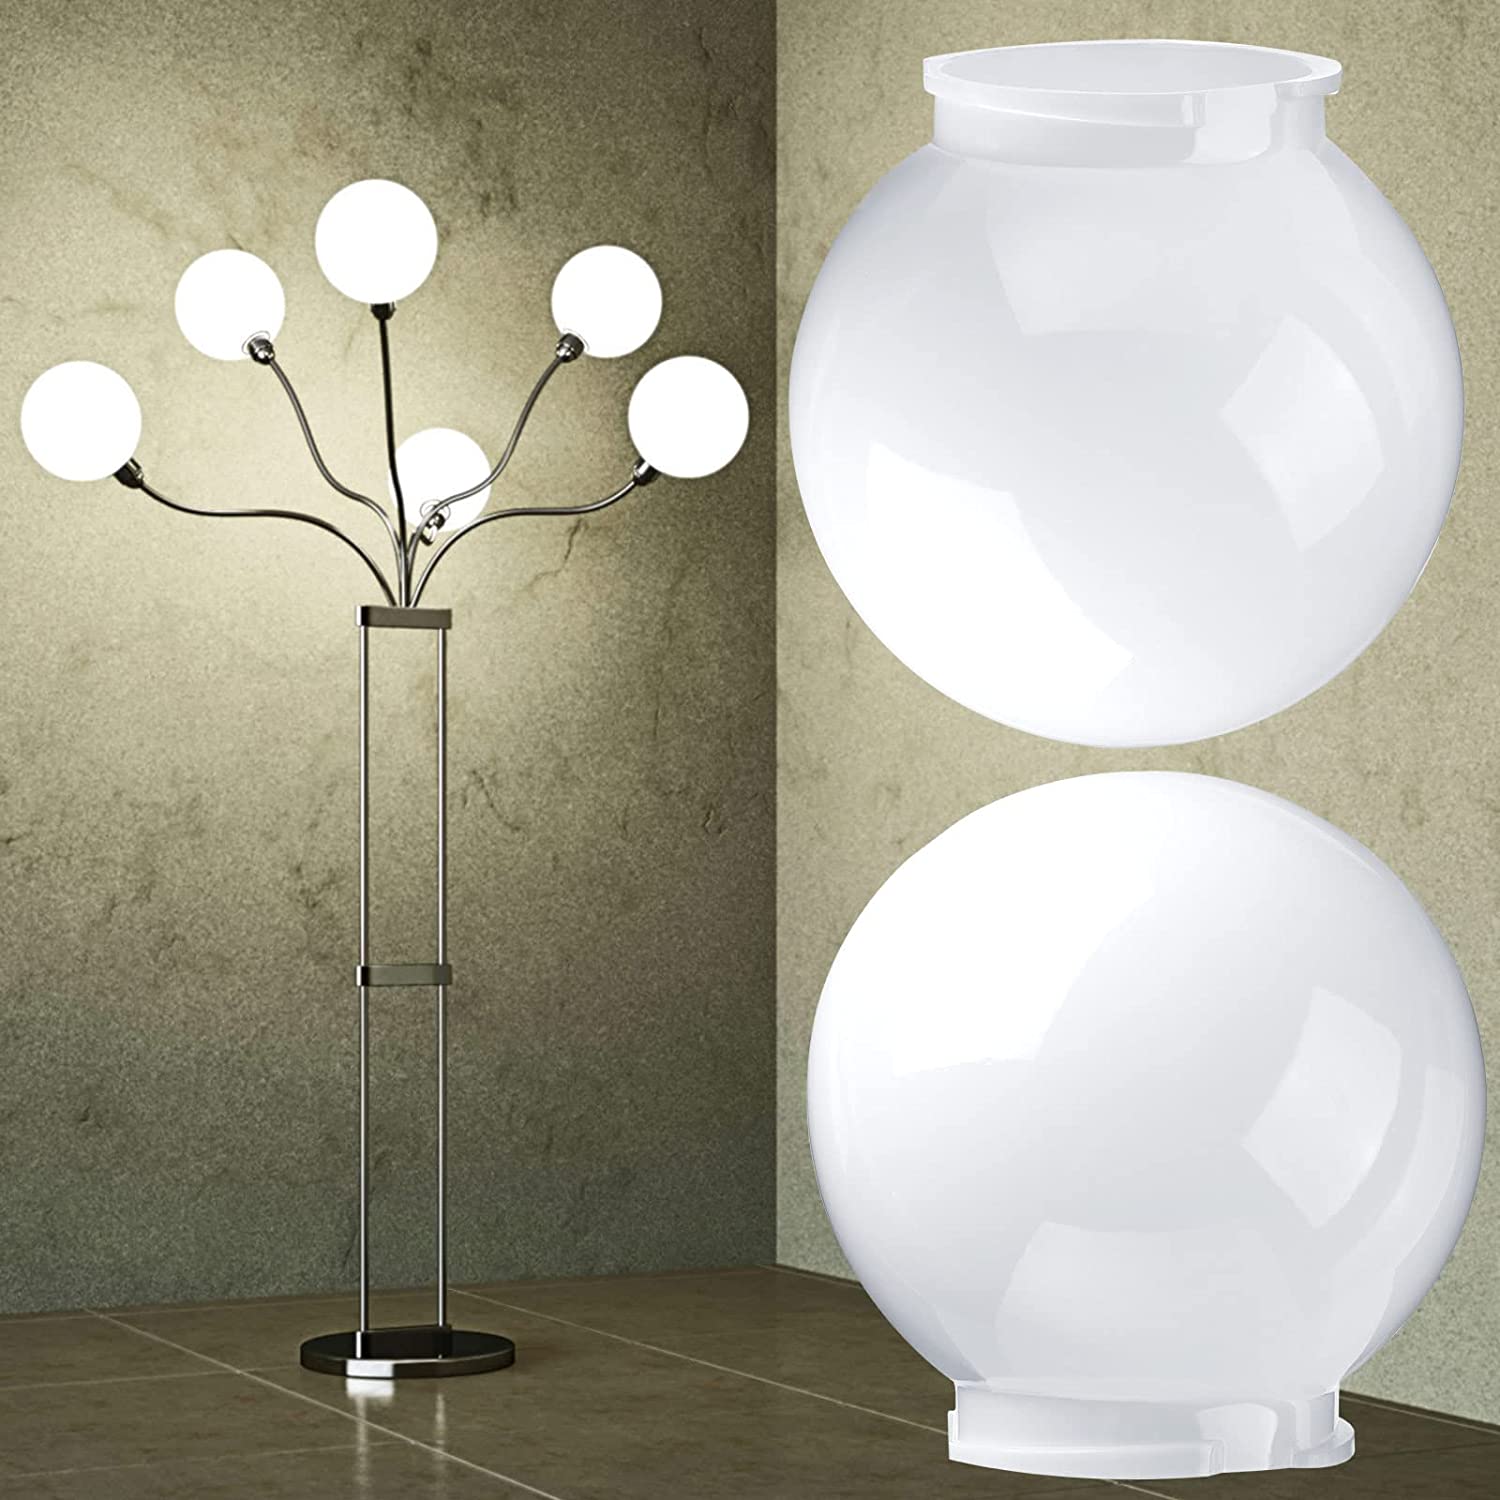 Ihotele Elula EFrosted White Glass Ceiling Lamp Shade Lampshade06